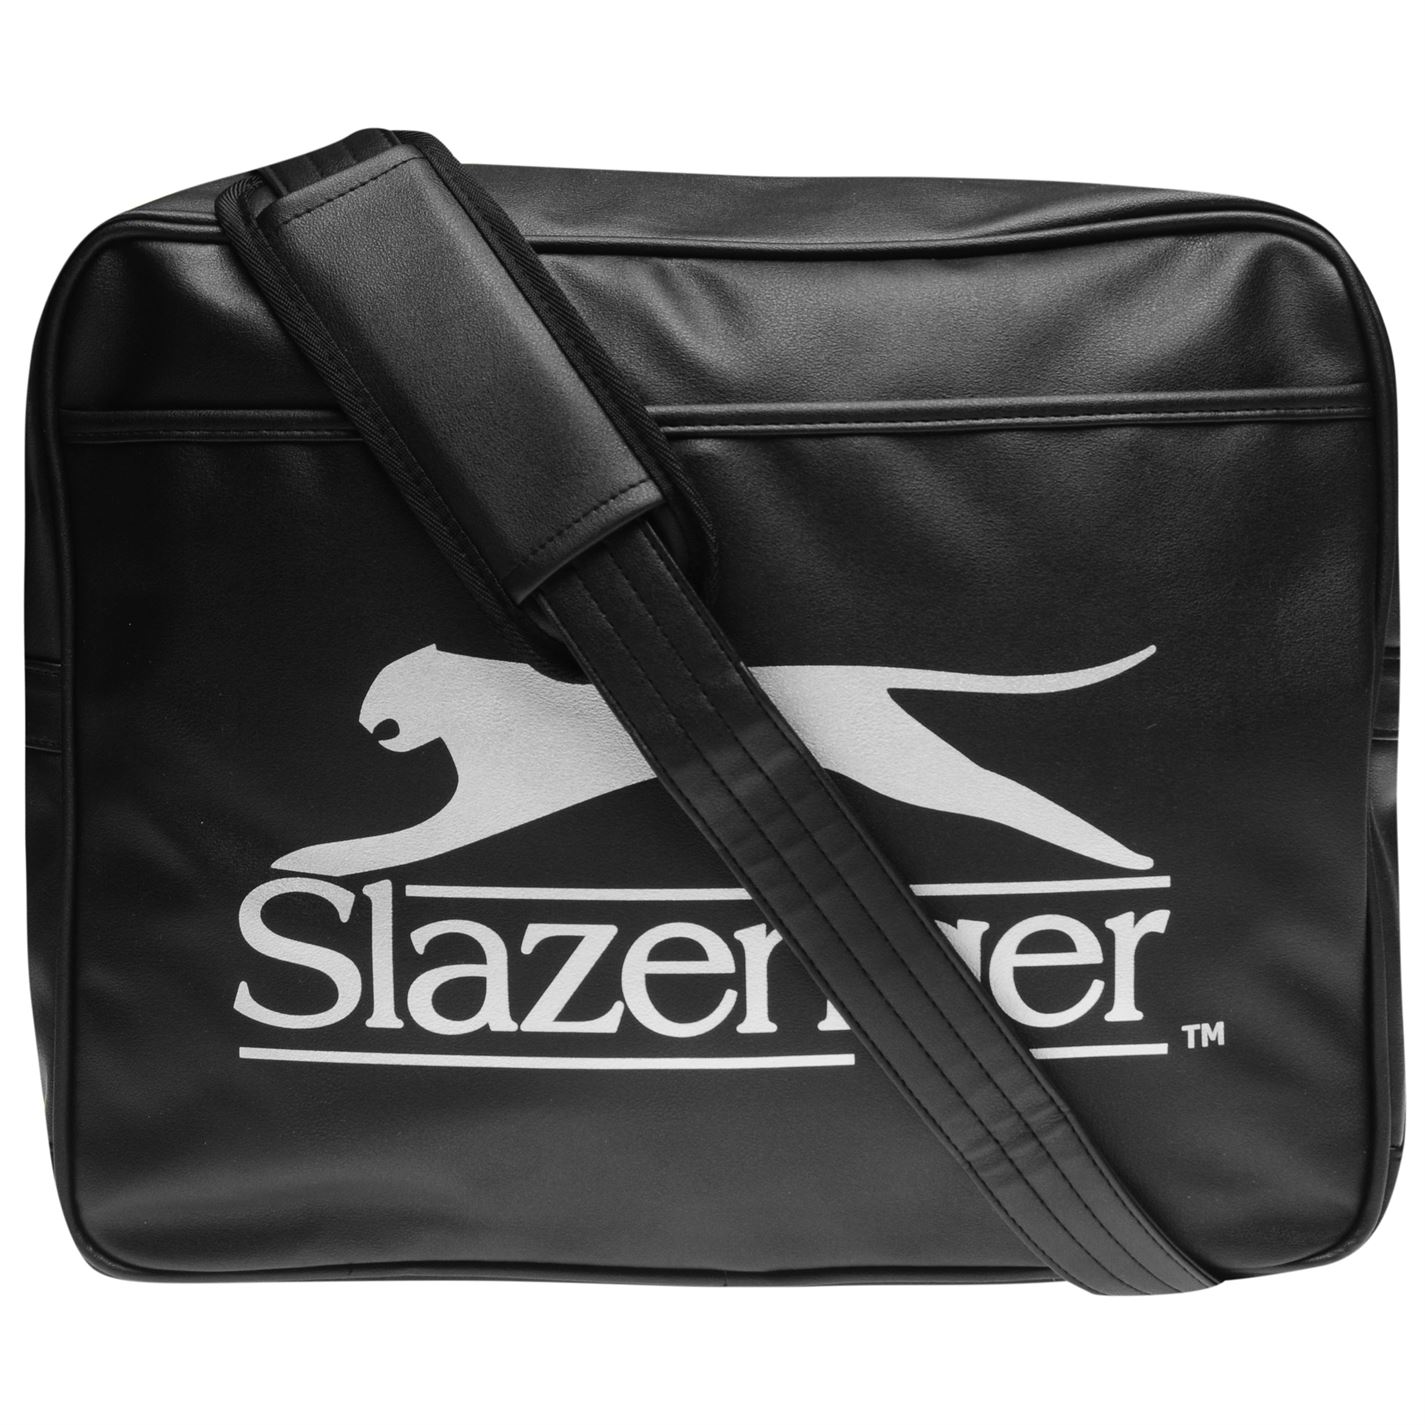 Flight bag. Slazenger сумки. Сумка мужская унисекс. Slazenger сумки на плечо. Slazenger сумка для крикета.